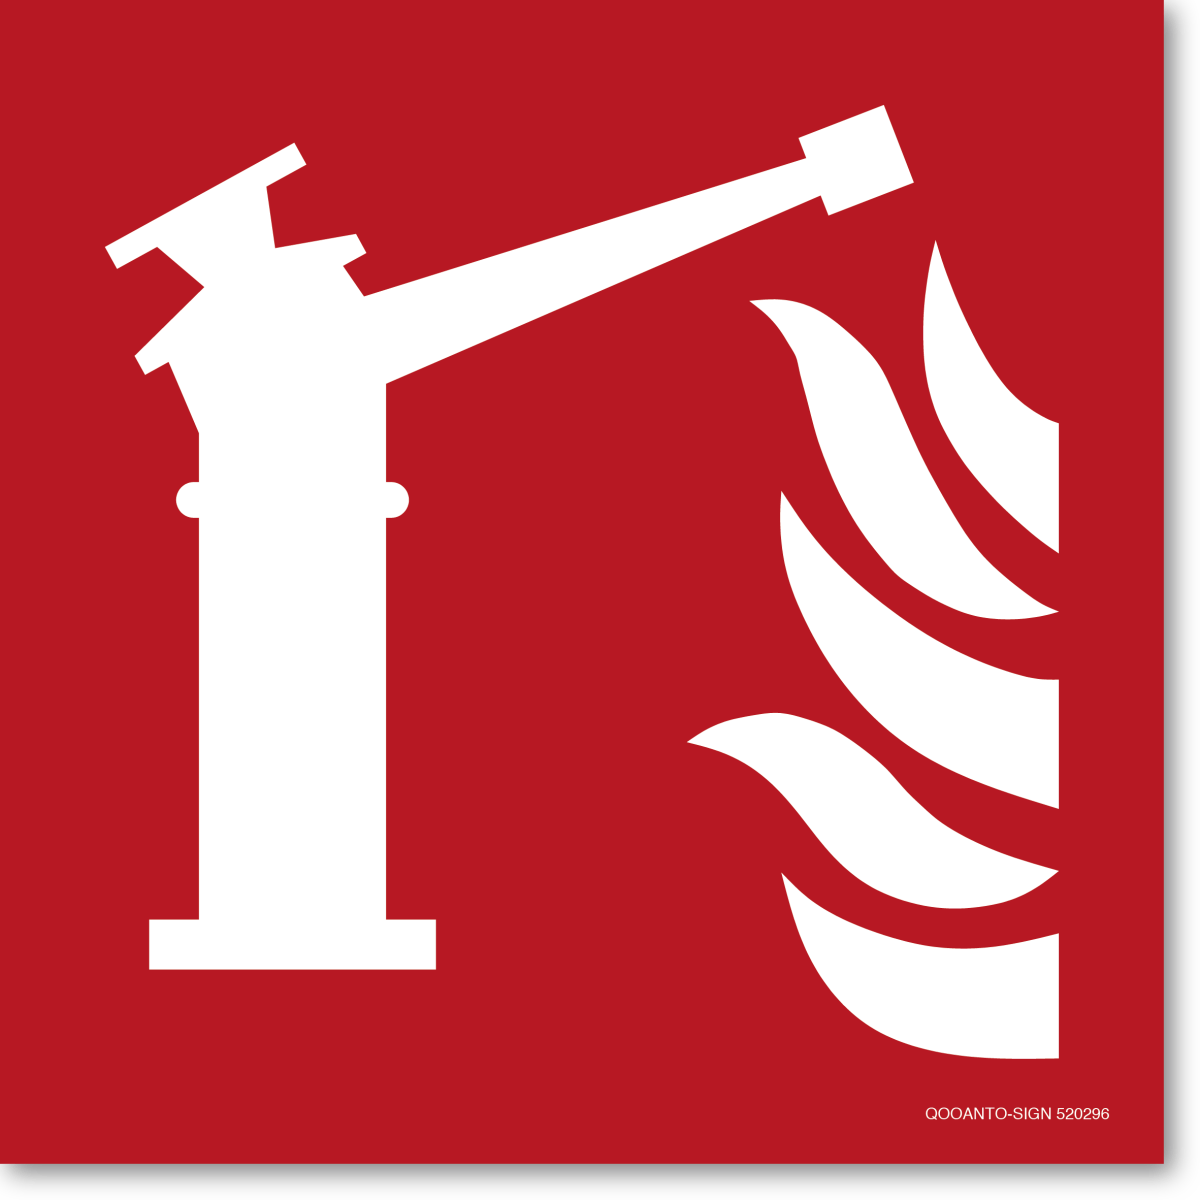 Feuerlöschmonitor, EN ISO 7010, F015 Brandschutzschild oder Aufkleber aus Alu-Verbund oder Selbstklebefolie mit UV-Schutz - QOOANTO-SIGN